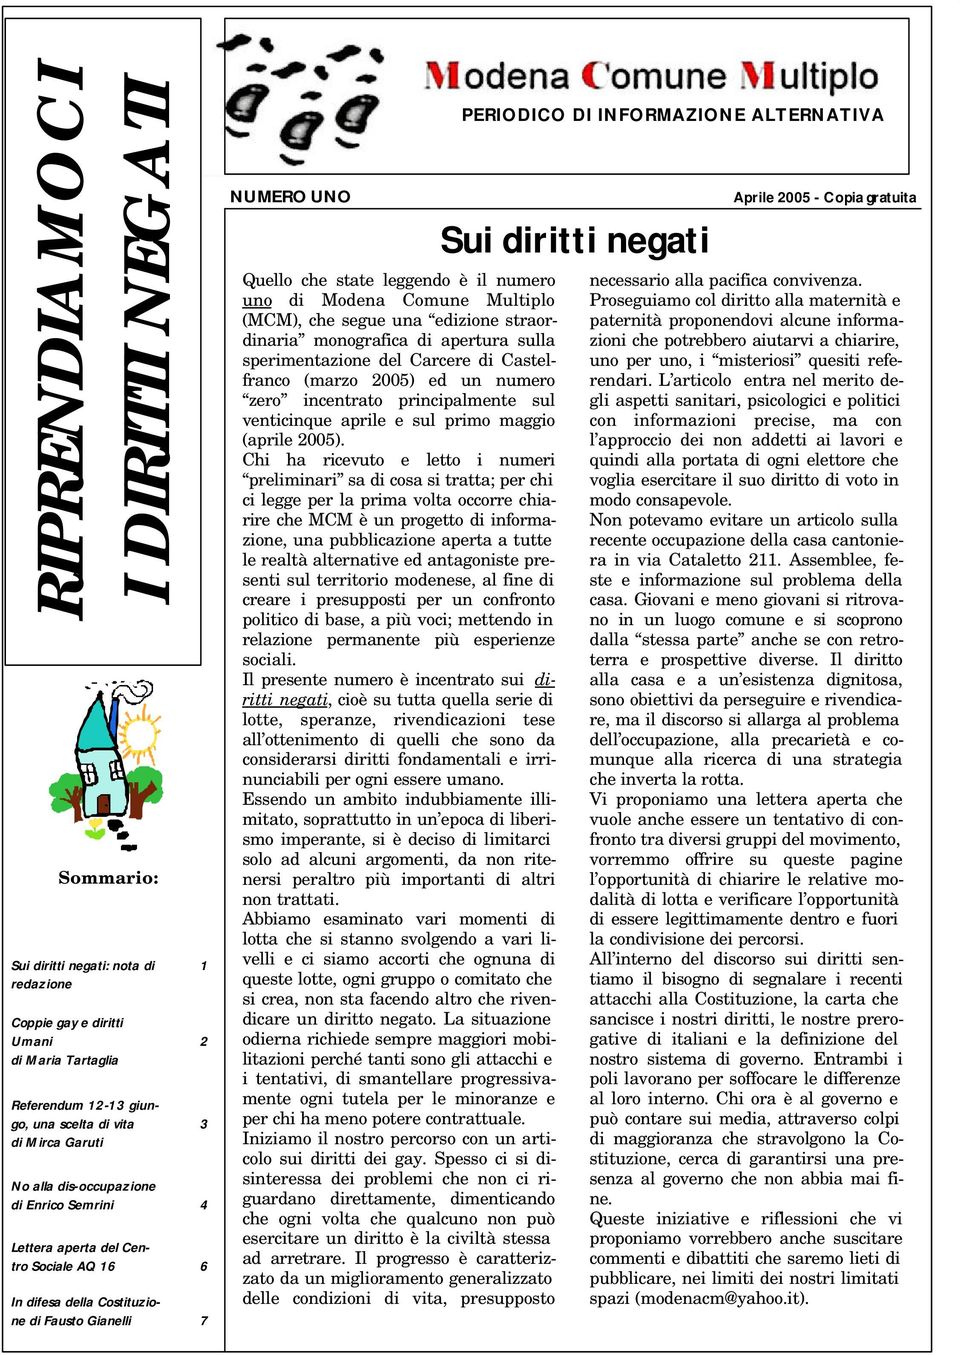 Comune Multiplo (MCM), che segue una edizione straordinaria monografica di apertura sulla sperimentazione del Carcere di Castelfranco (marzo 2005) ed un numero zero incentrato principalmente sul